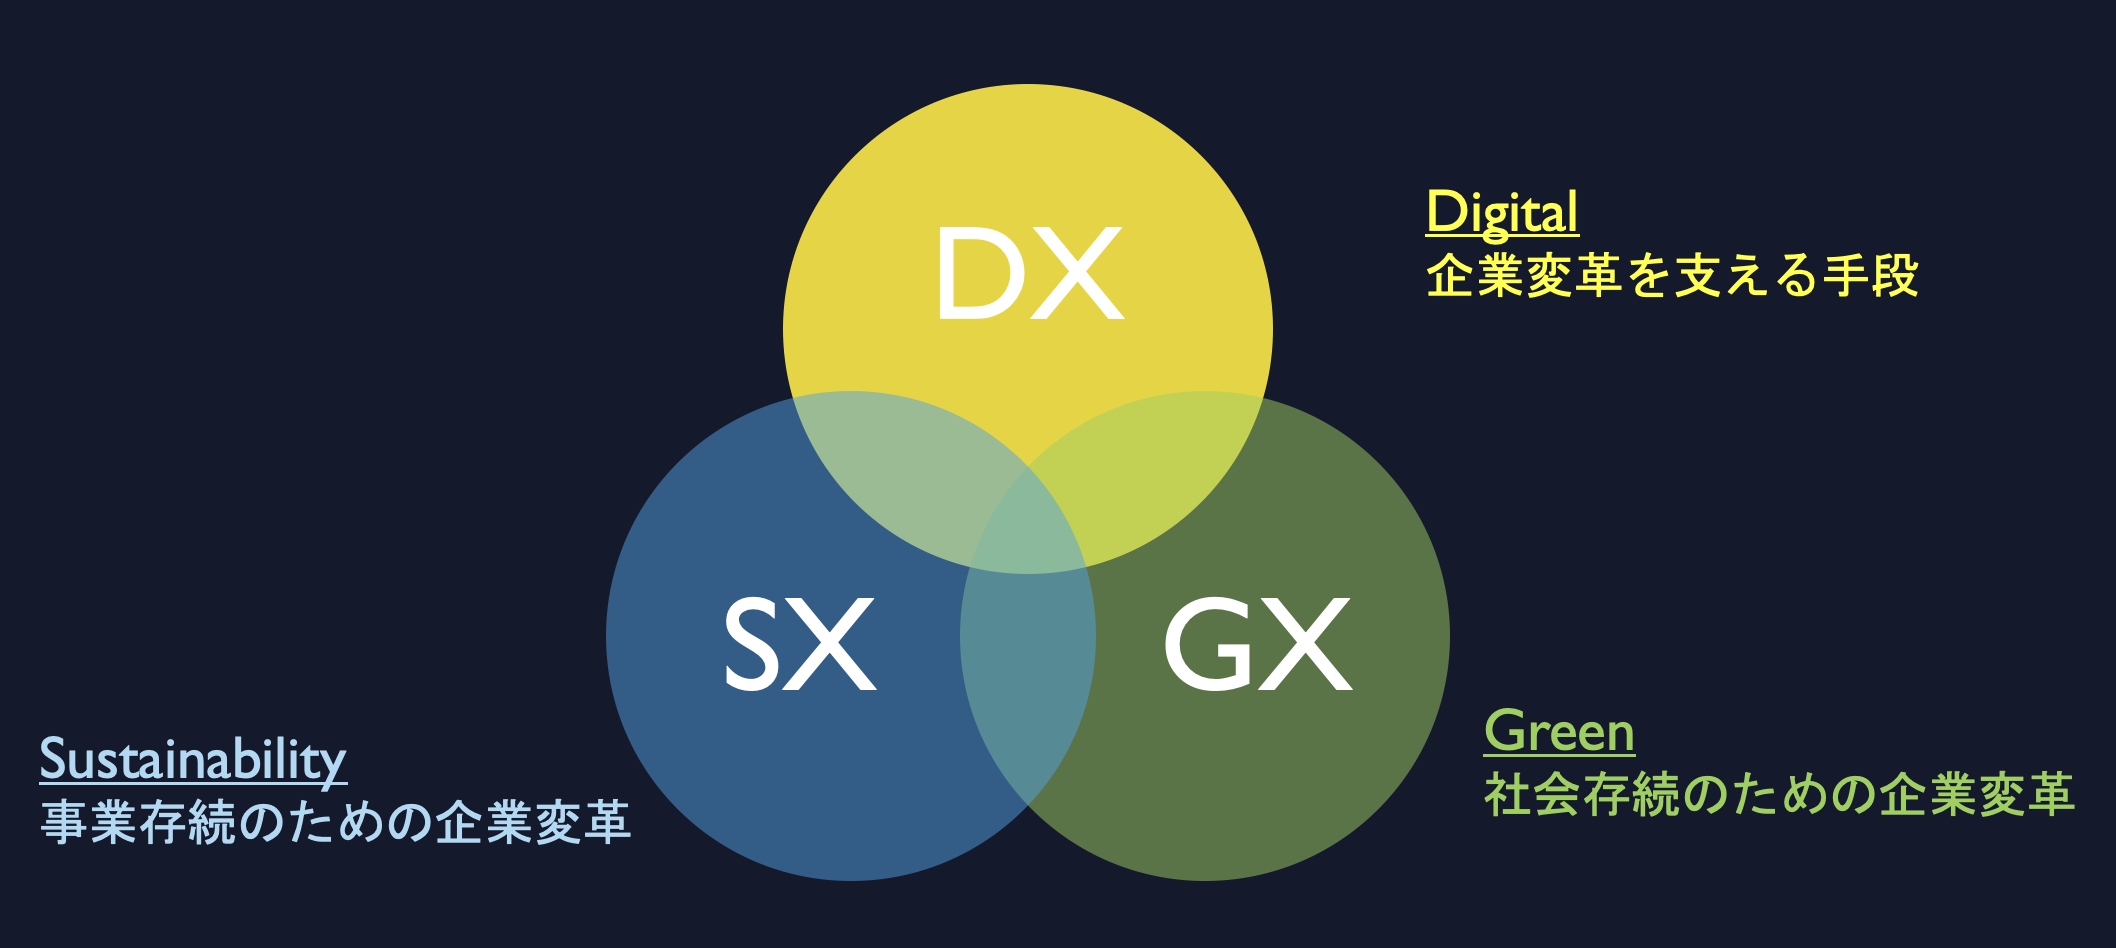 変革リーダーが語る日本企業に求められるDXの本質